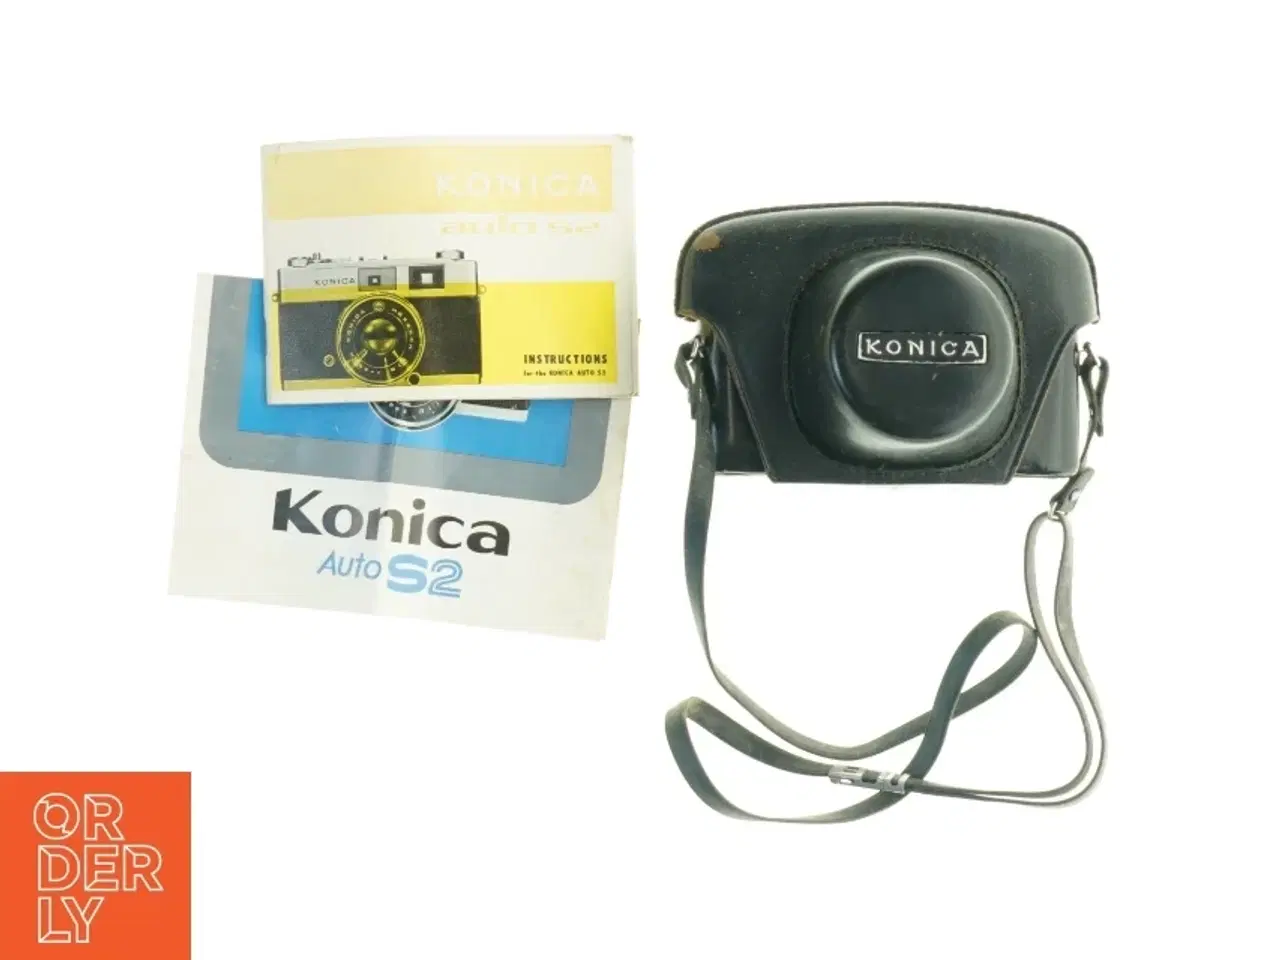 Billede 2 - Konica Auto S2 kamera med etui og manual fra Konica (str. 17 x 14 cm)